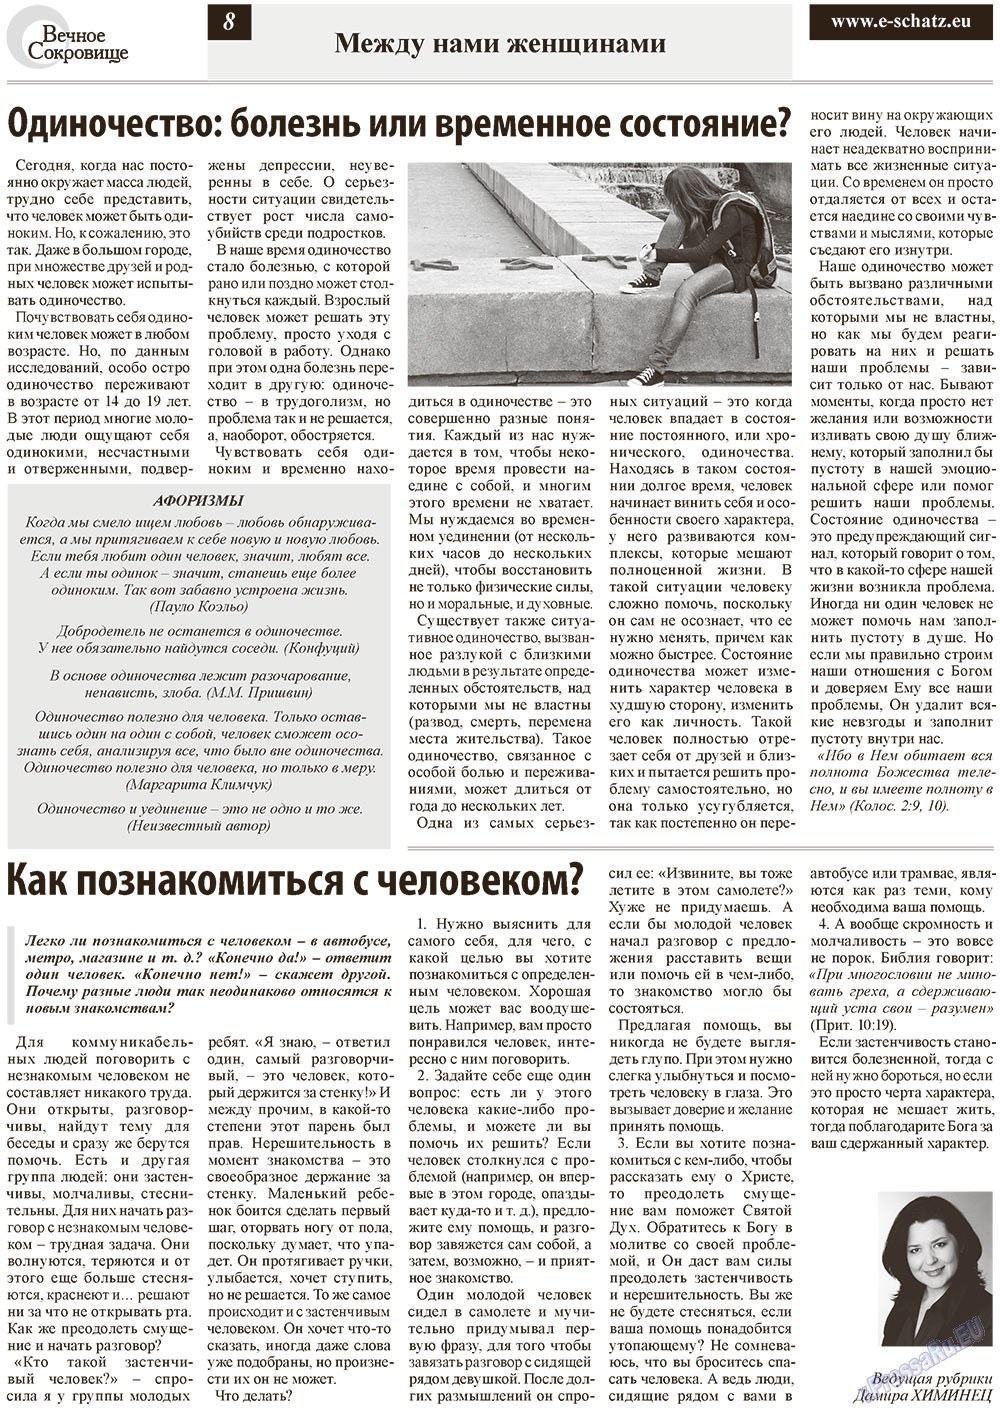 Вечное сокровище, газета. 2012 №6 стр.8